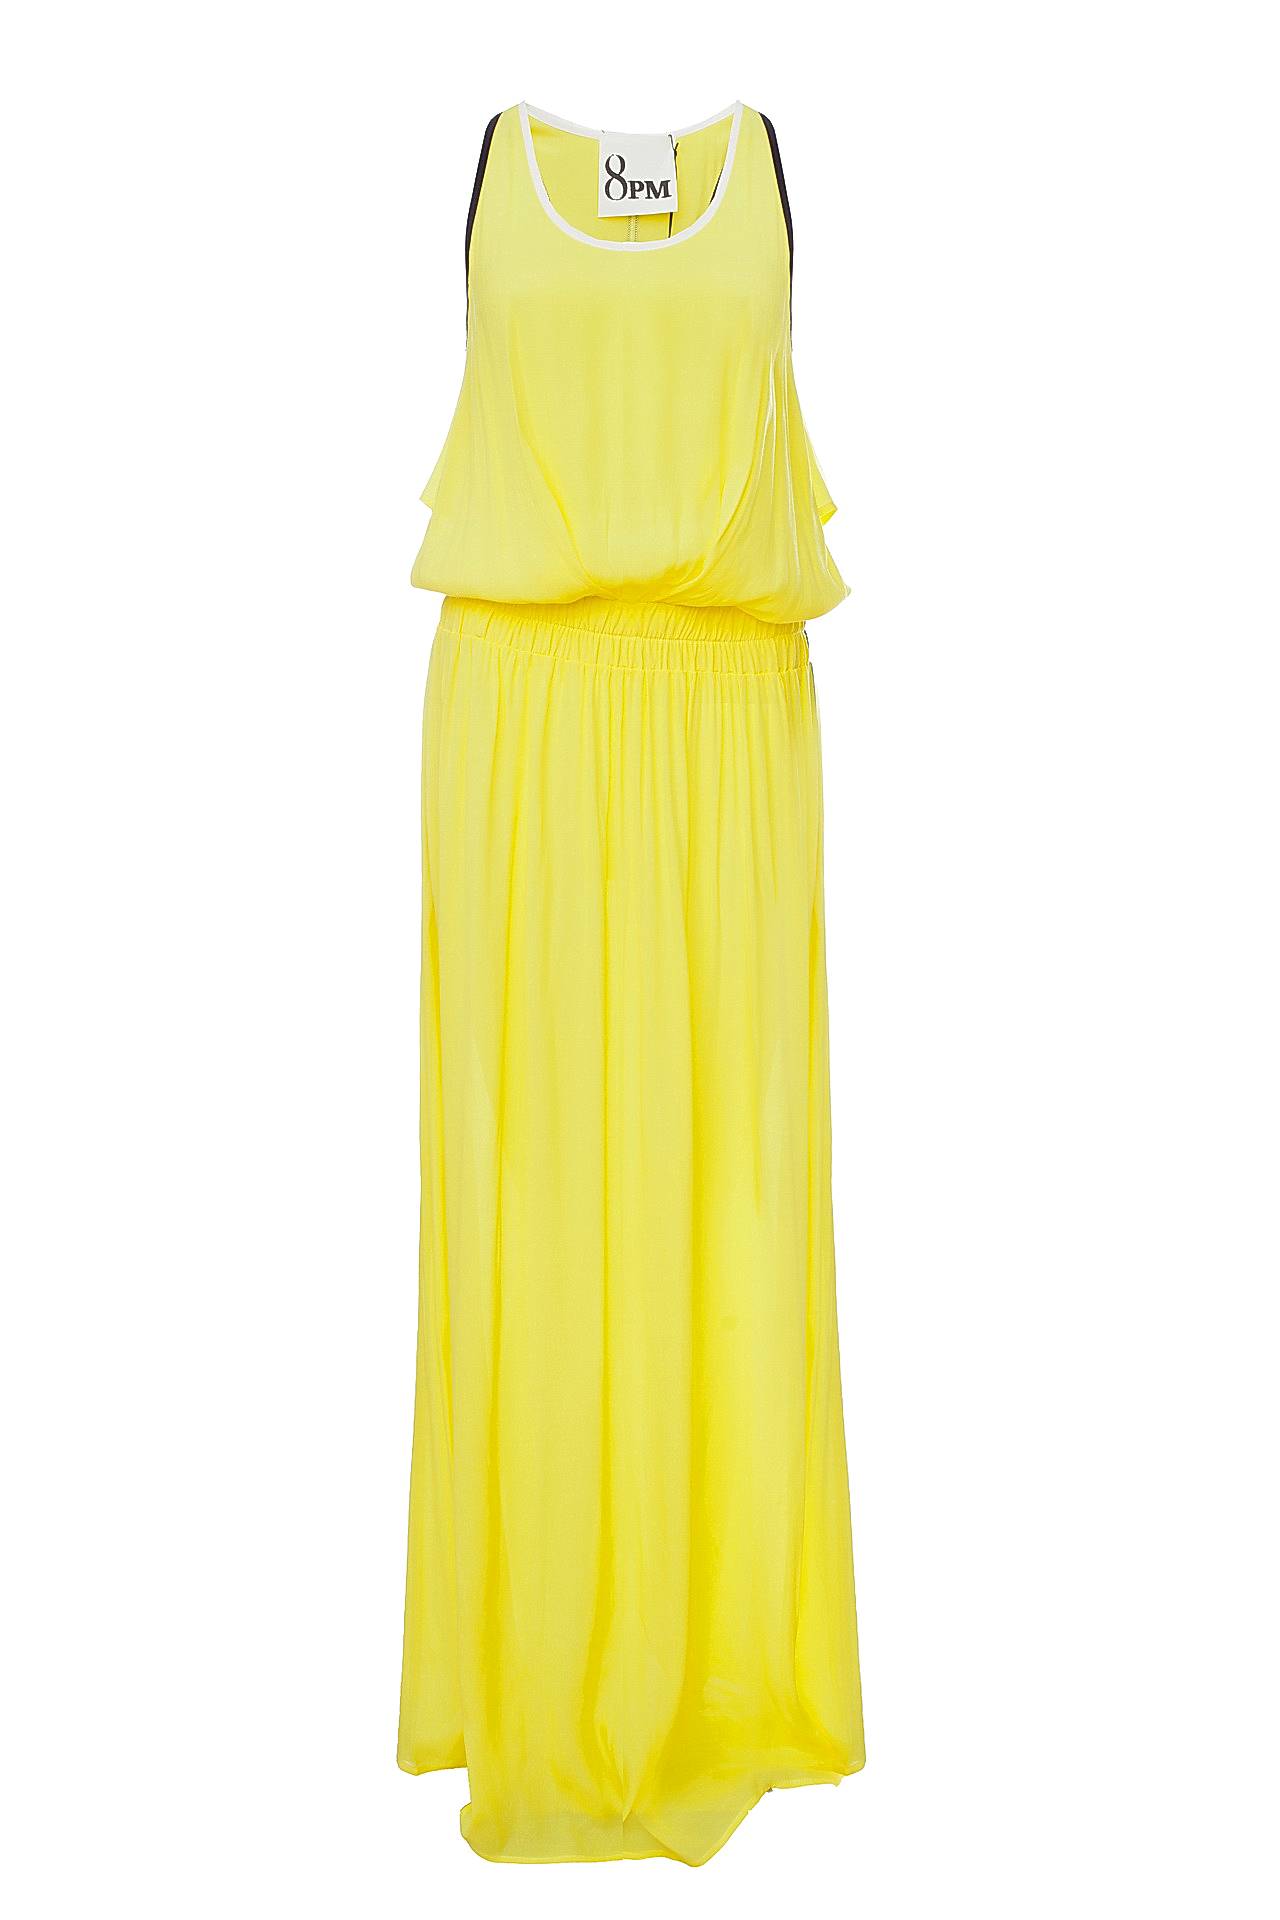 Одежда женская Платье 8PM (8PM61A51/16.2). Купить за 11450 руб.